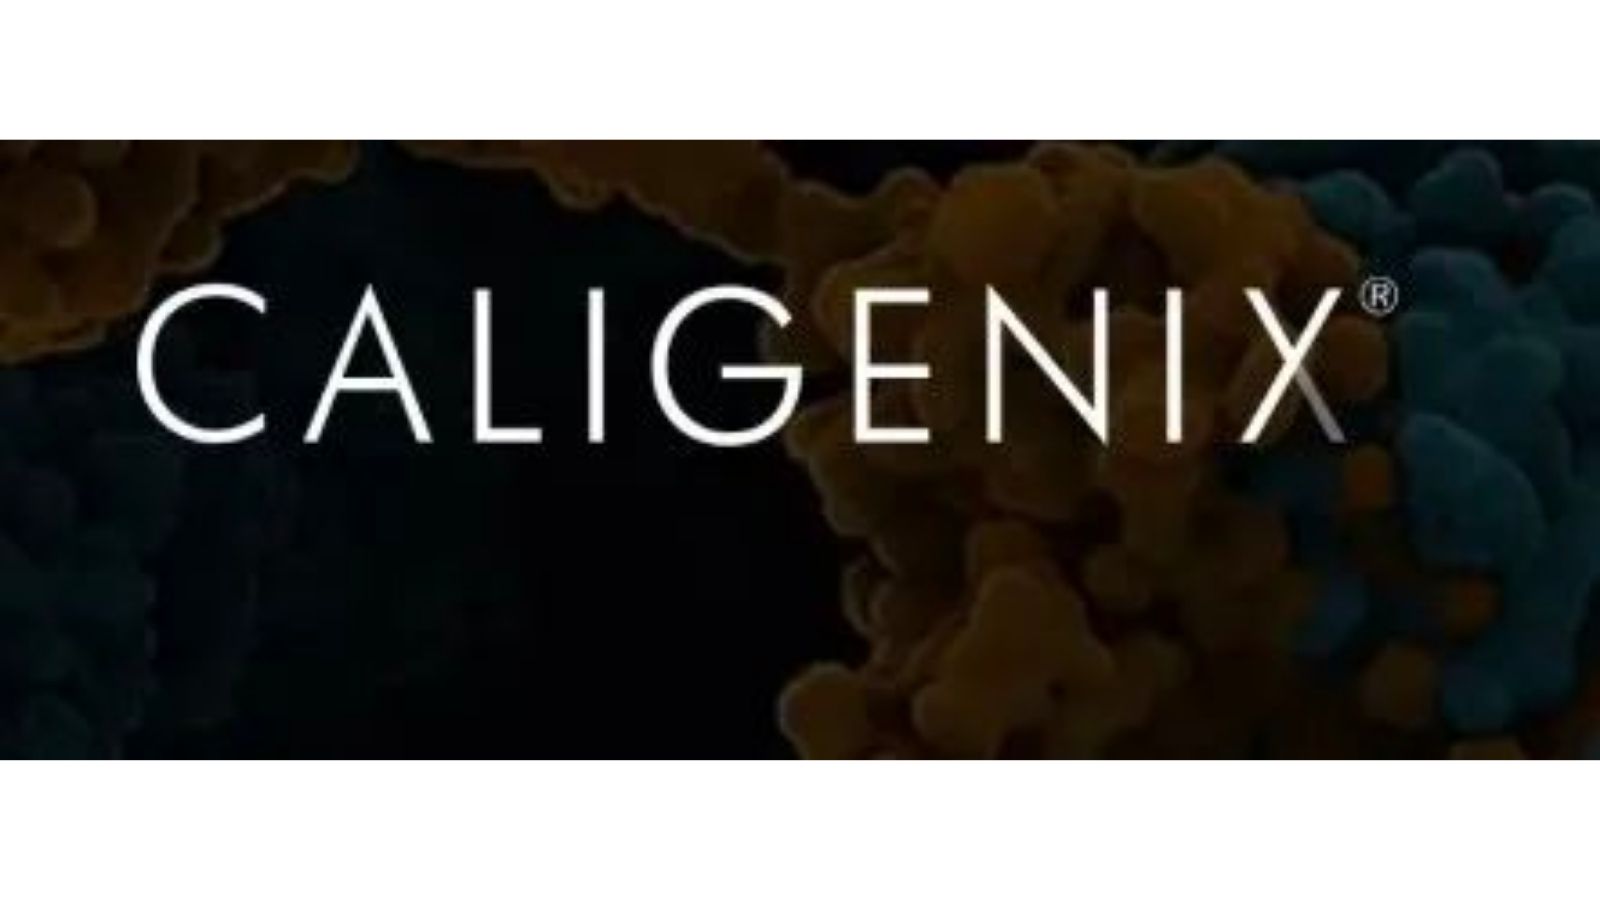 Caligenix 是一家开发个性化基因组诊断试剂盒的生物技术公司